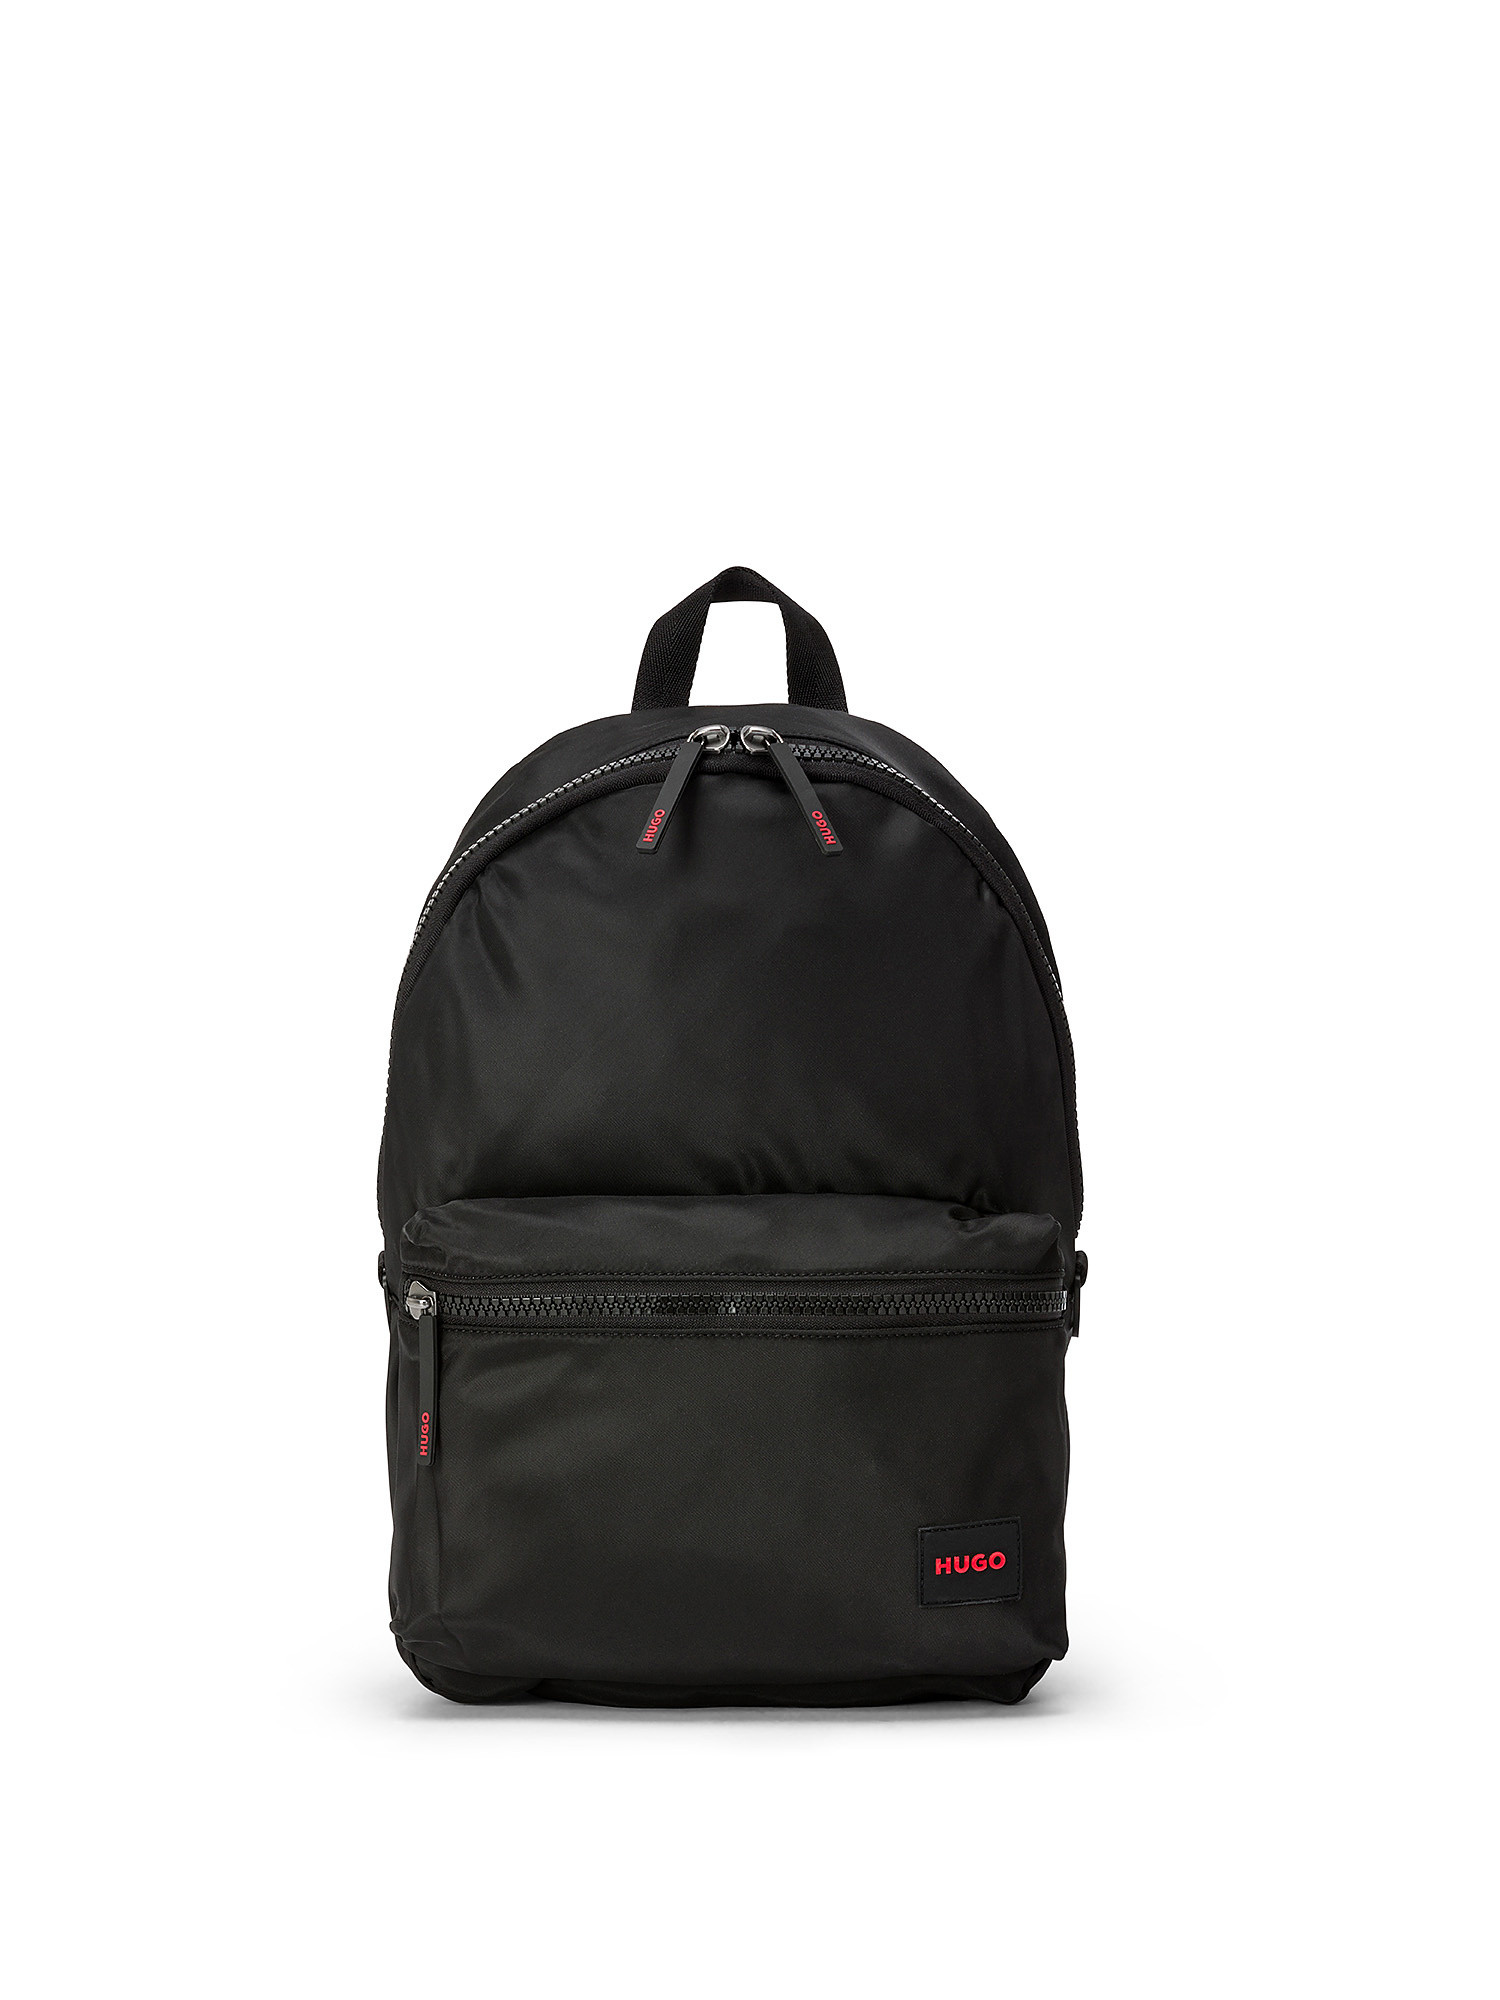 Hugo - Logo backpack, Black, large image number 0